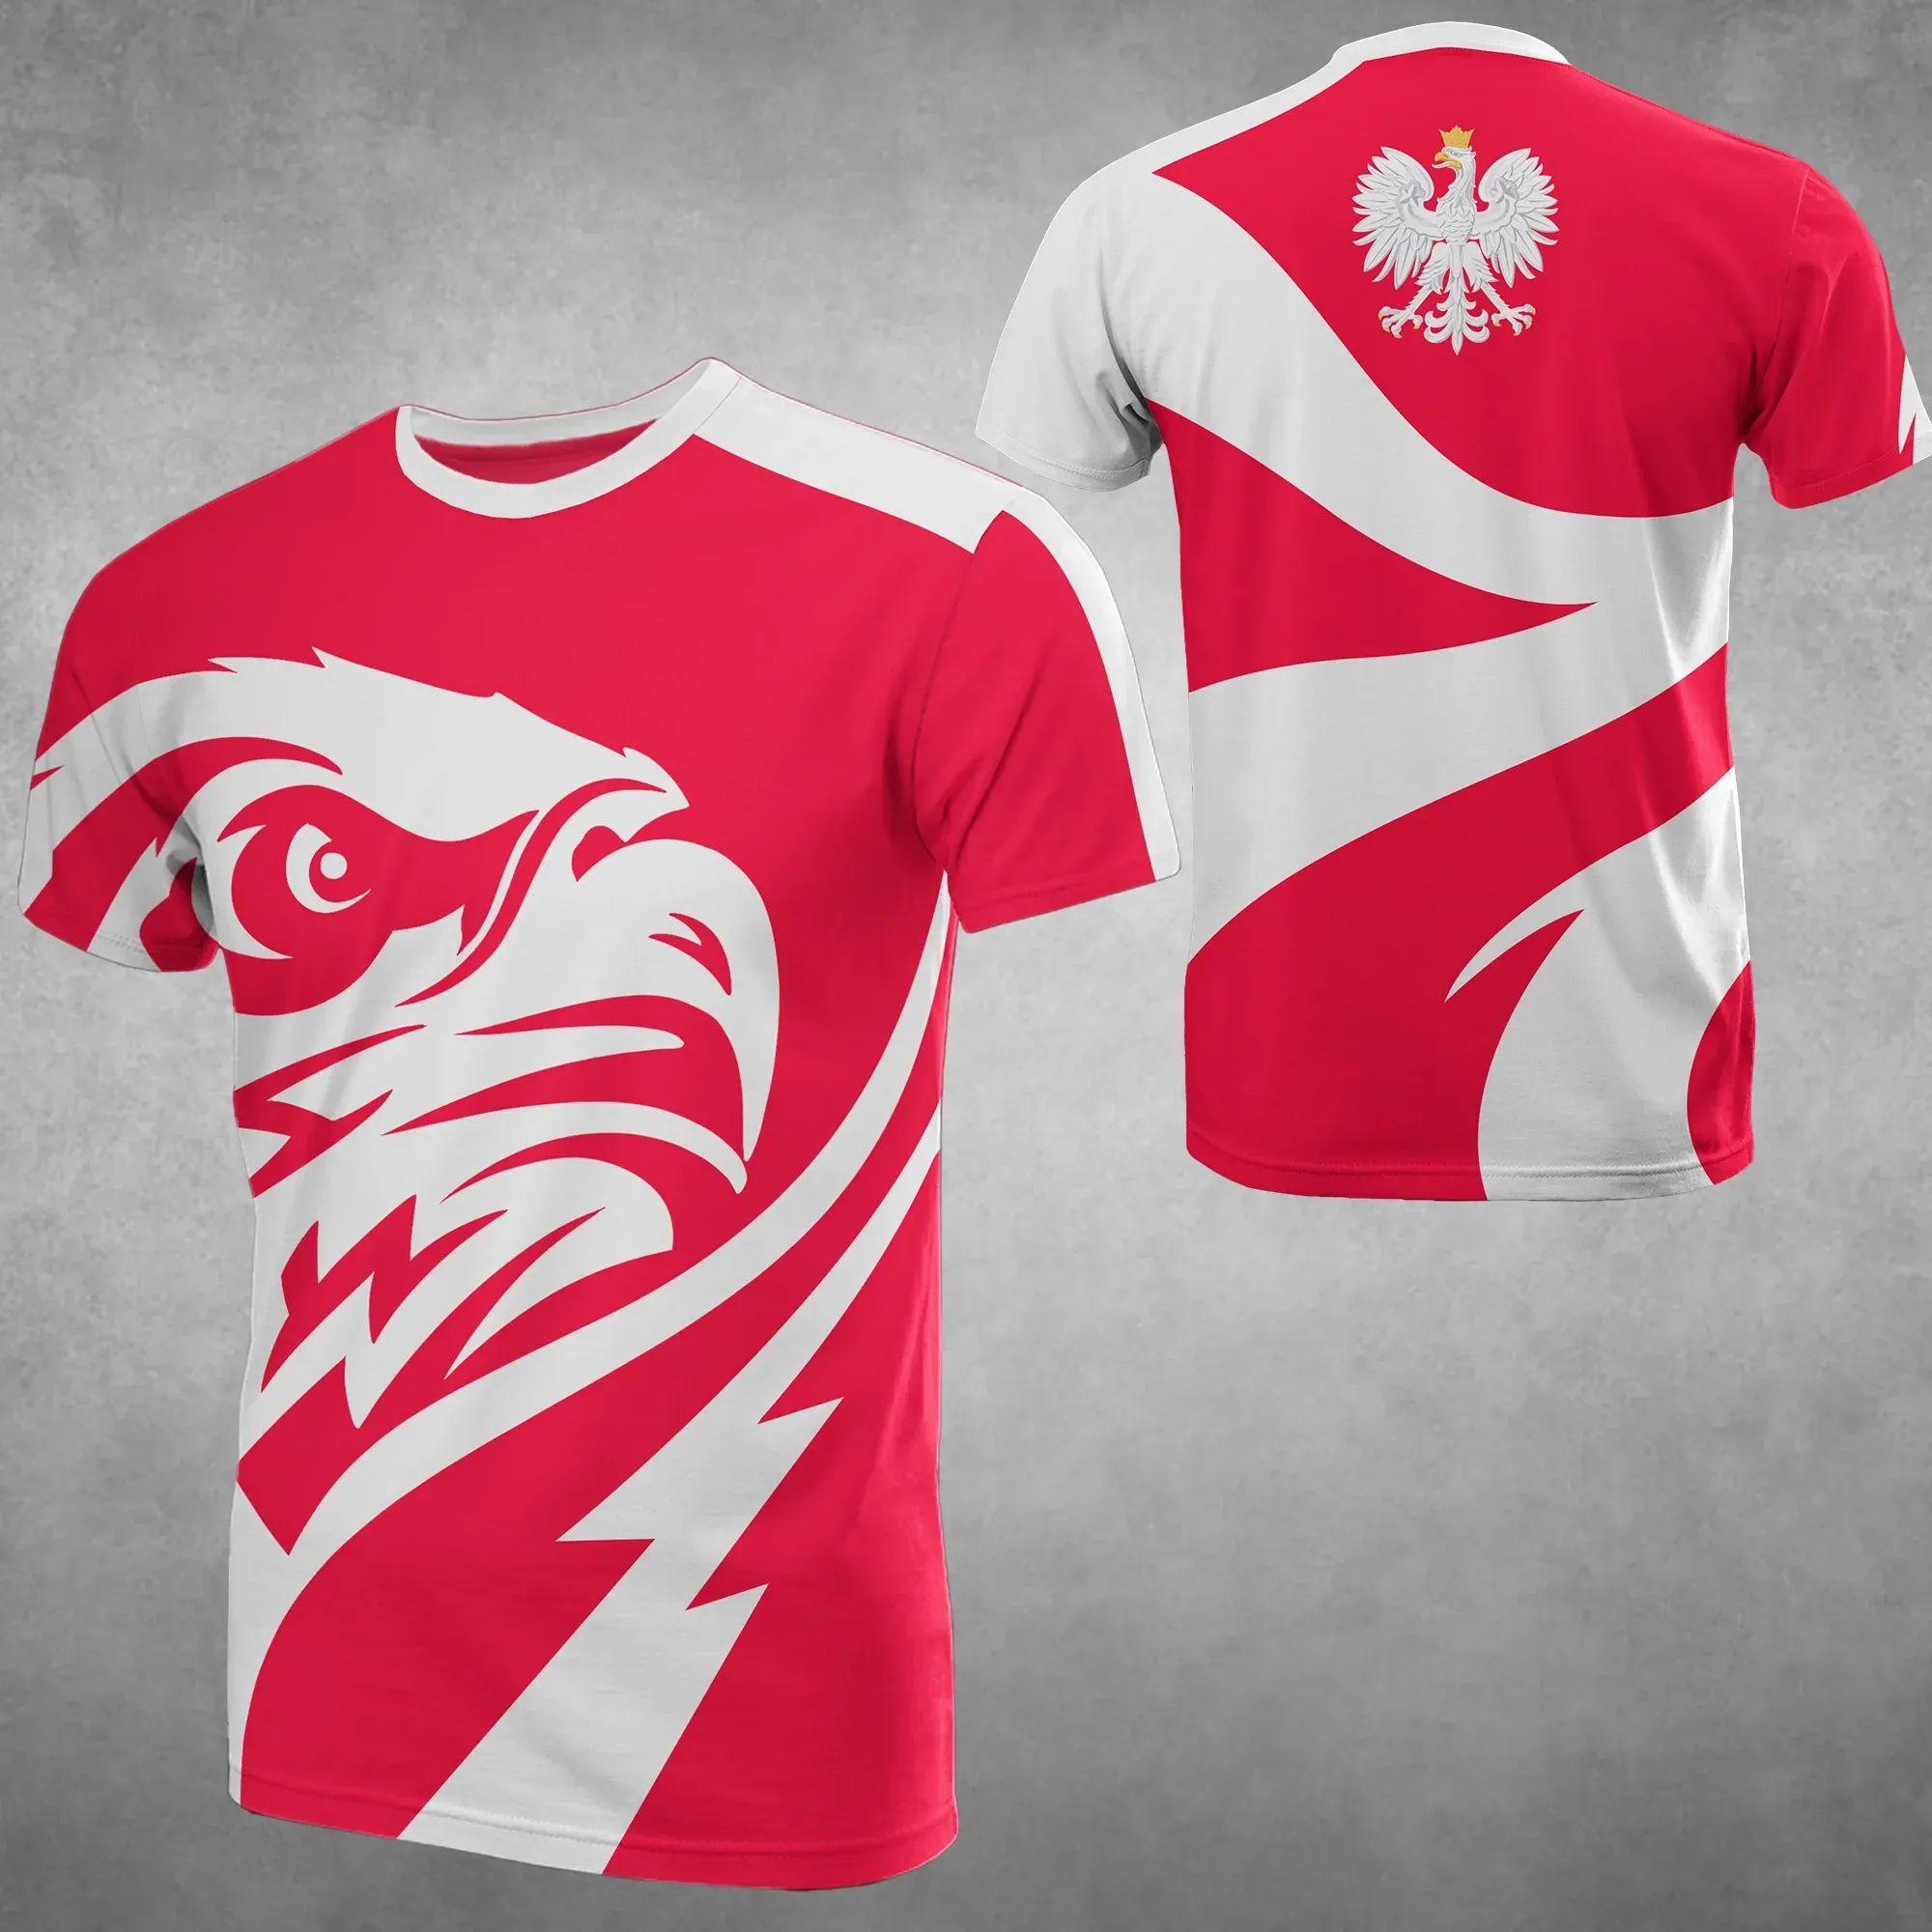 poland-eagle-t-shirts